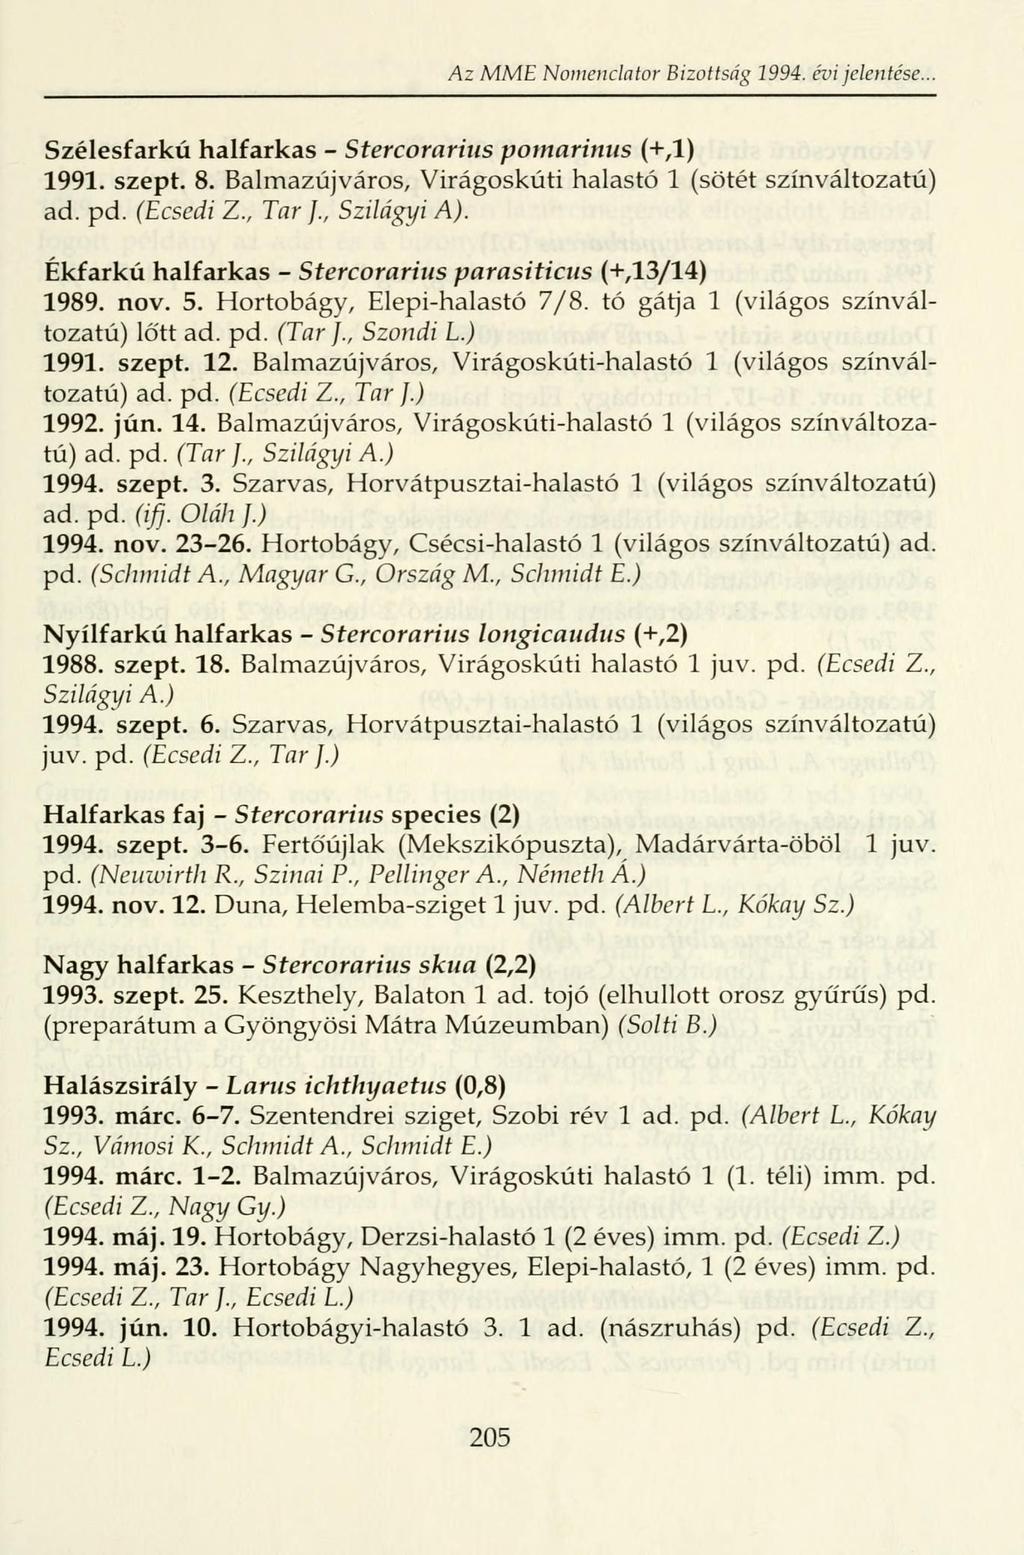 Az MME Nomenclator Bizottság 1994. évi jelentése.. Szélesfarkú halfarkas - Stercorarius pomarinus (+,1) 1991. szept. 8. Balmazújváros, Virágoskúti halastó 1 (sötét színváltozatú) ad. pd. (Ecsedi Z.